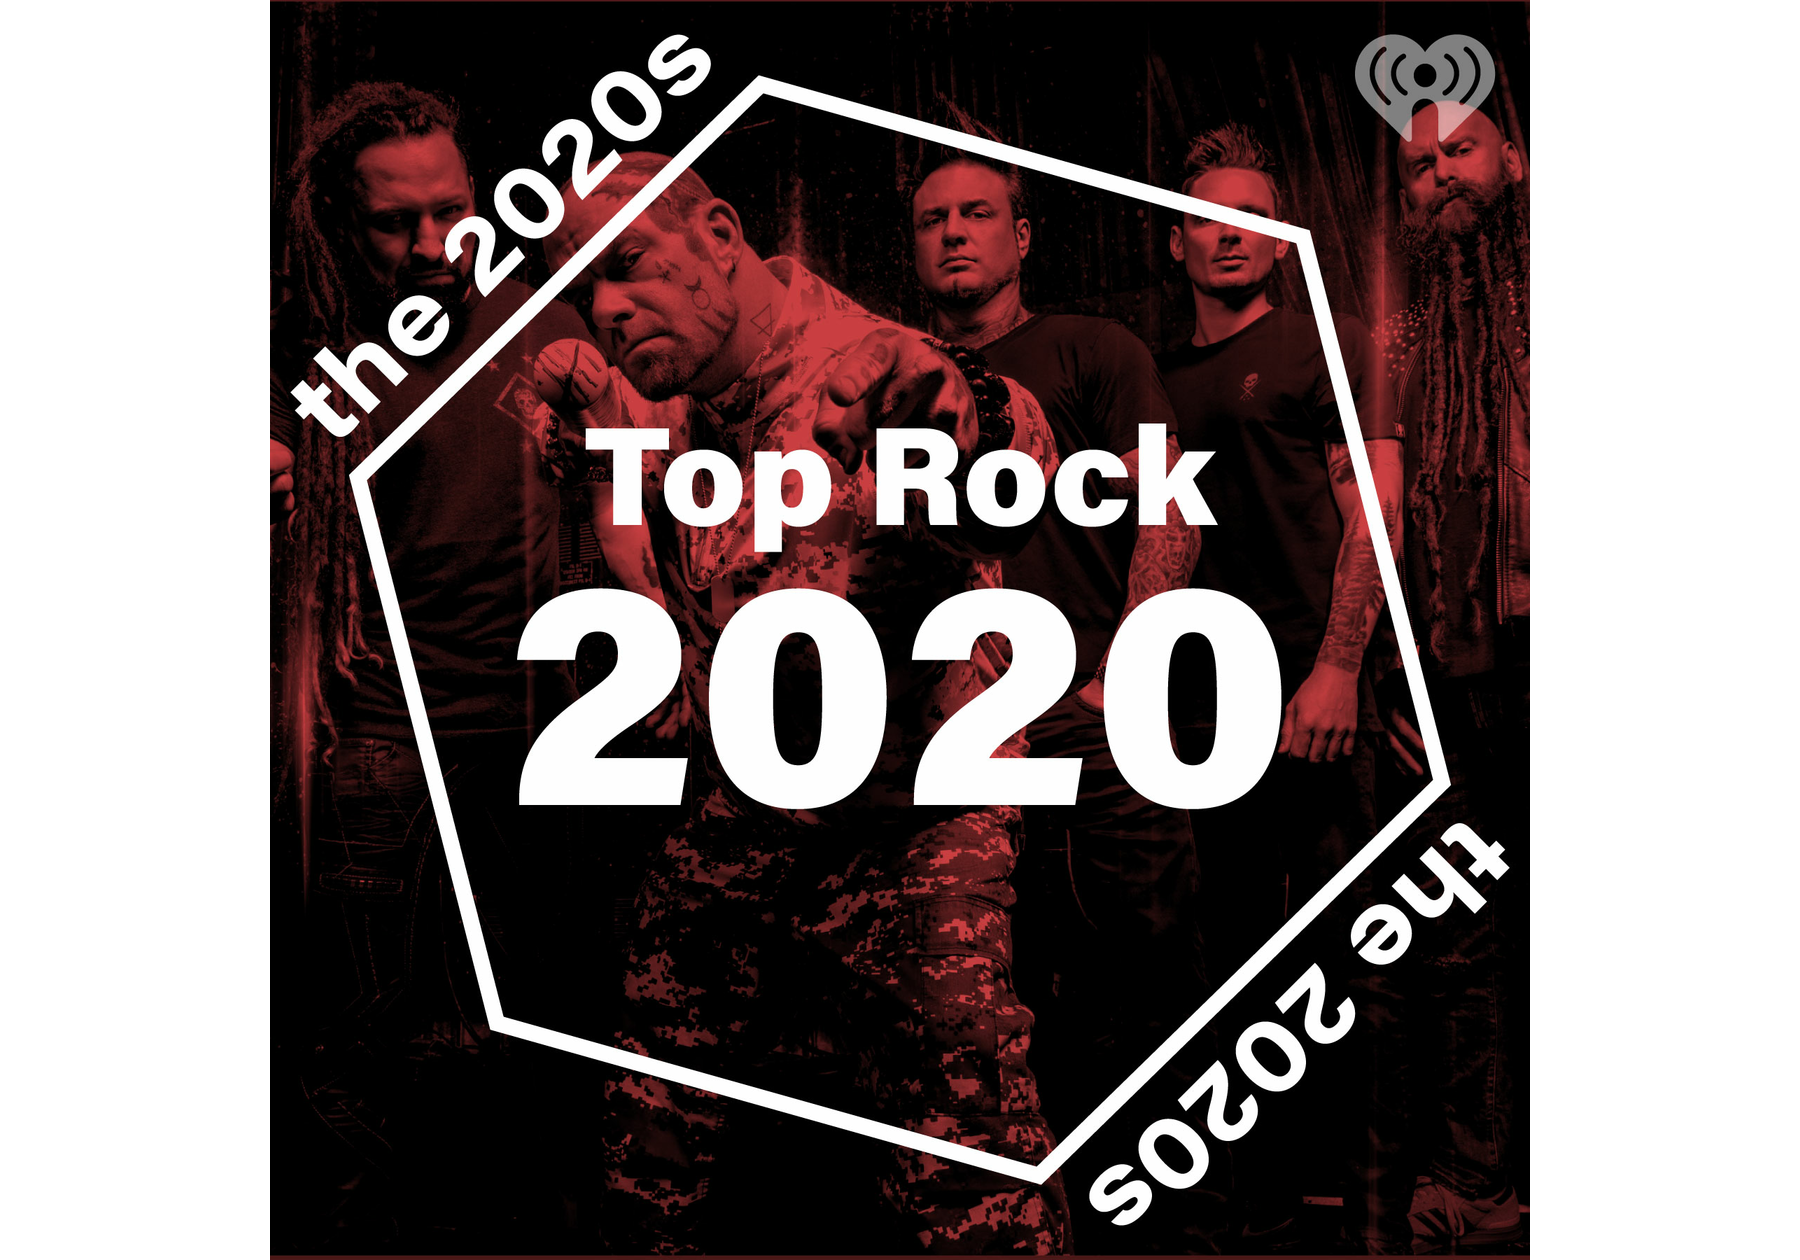 Top Rock 2020 iHeartRadio